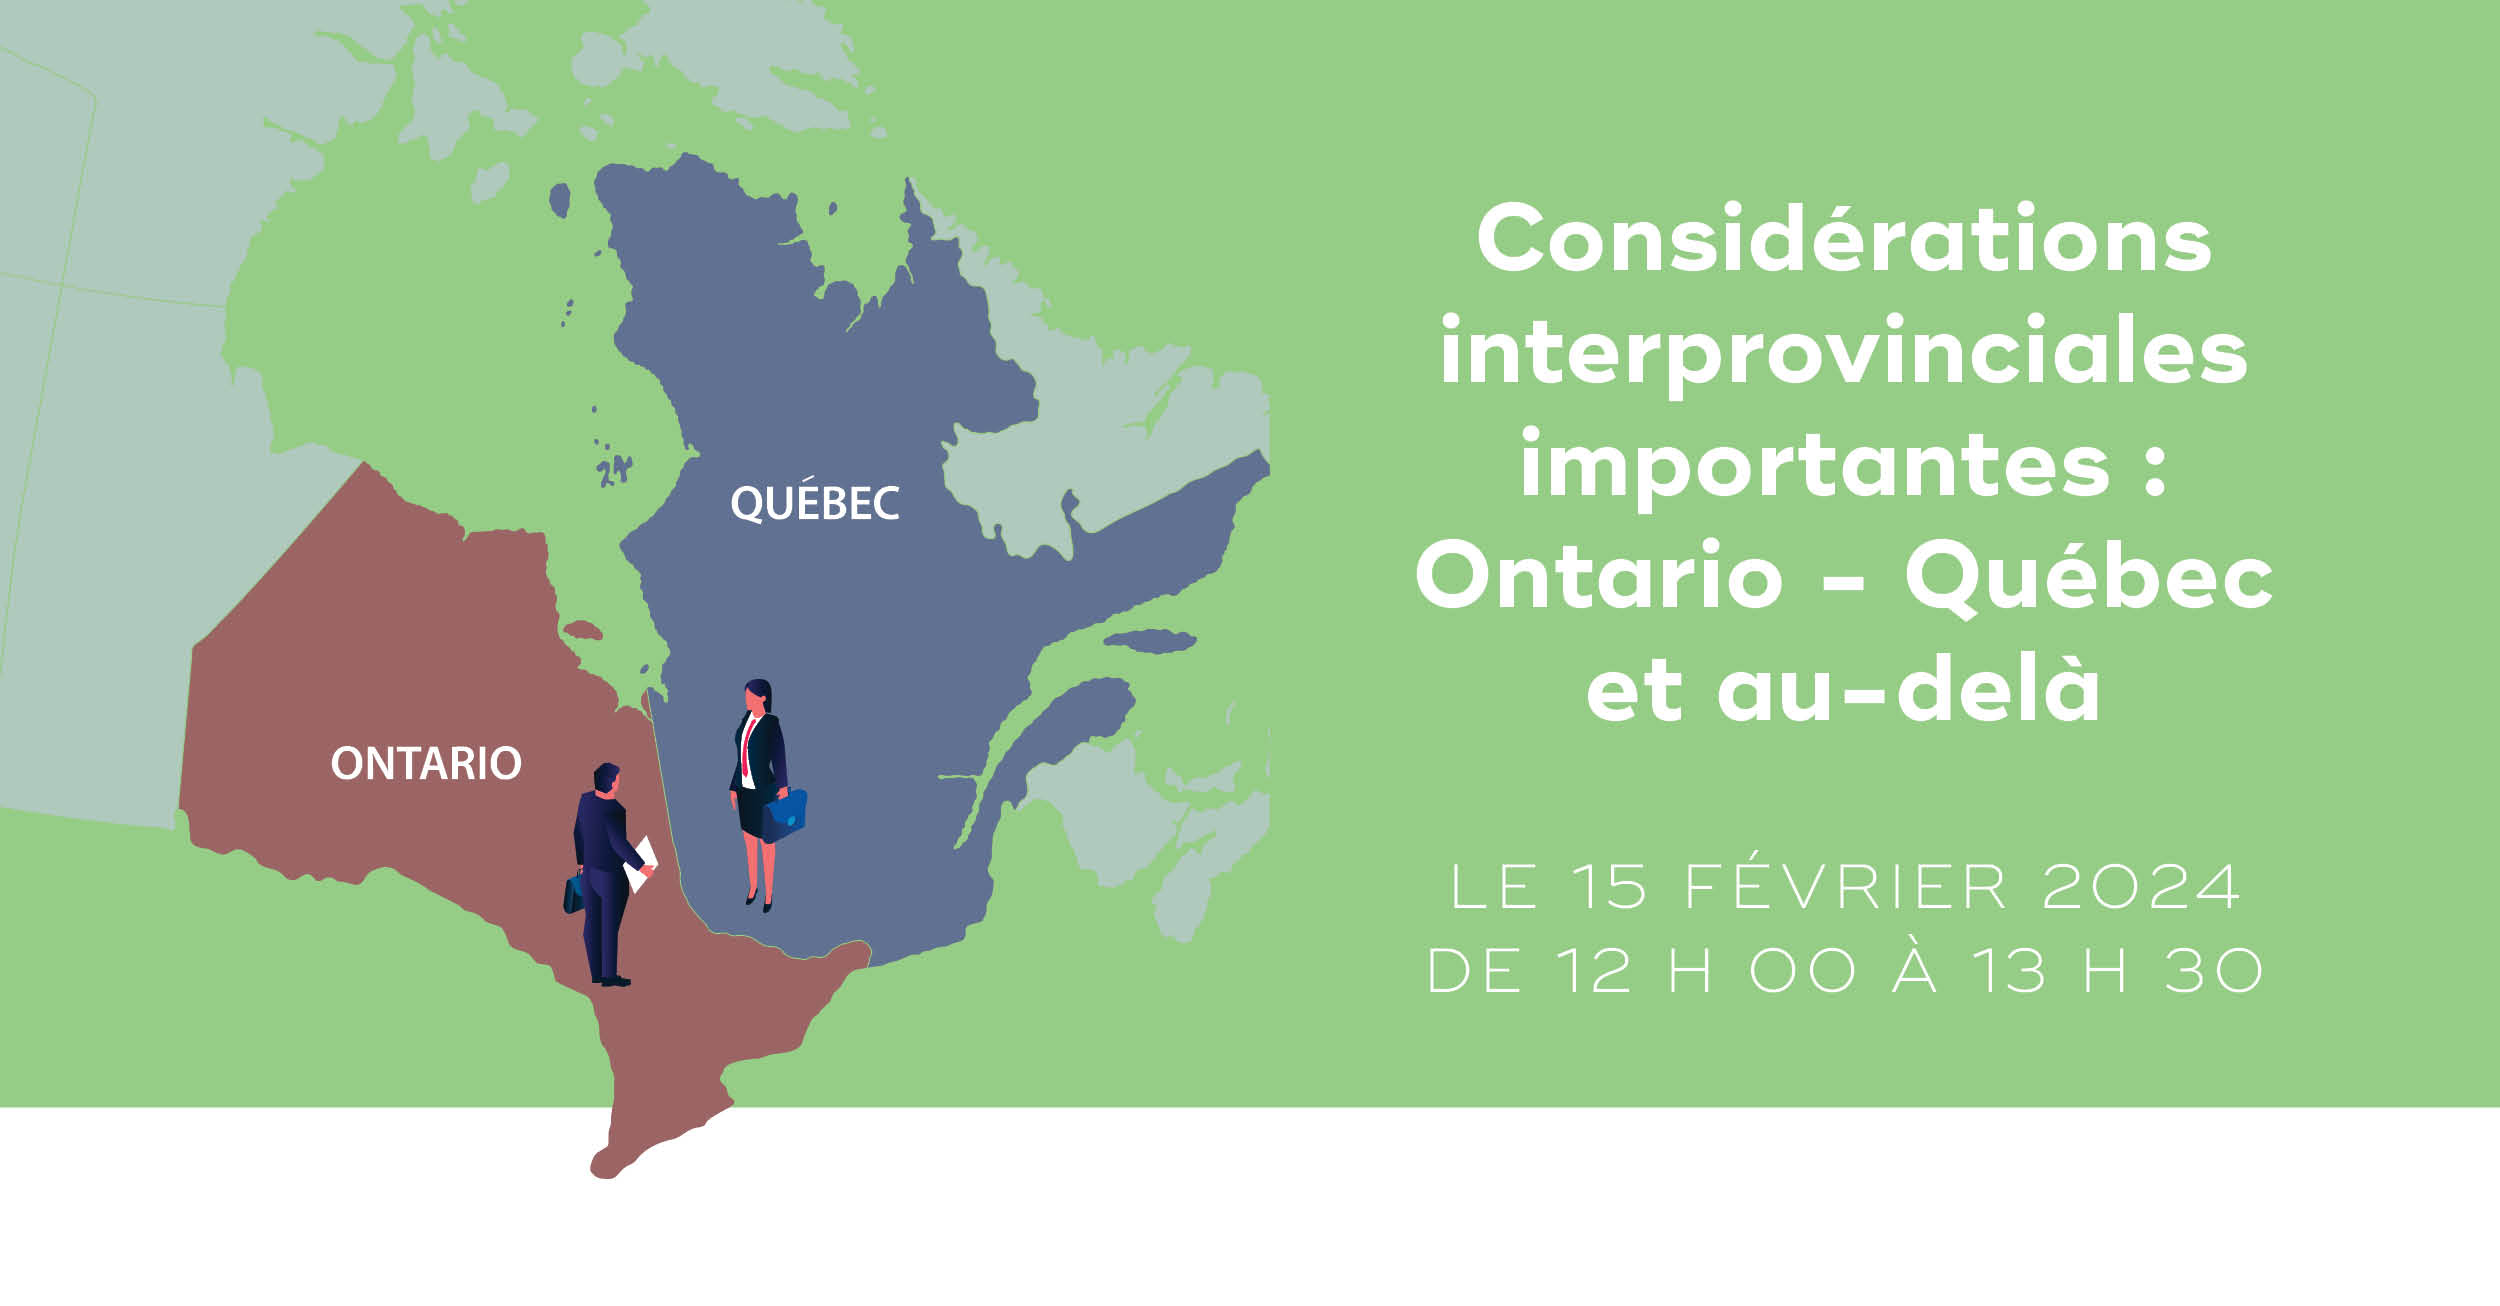 Considérations interprovinciales importantes : Ontario - Québec et au-delà